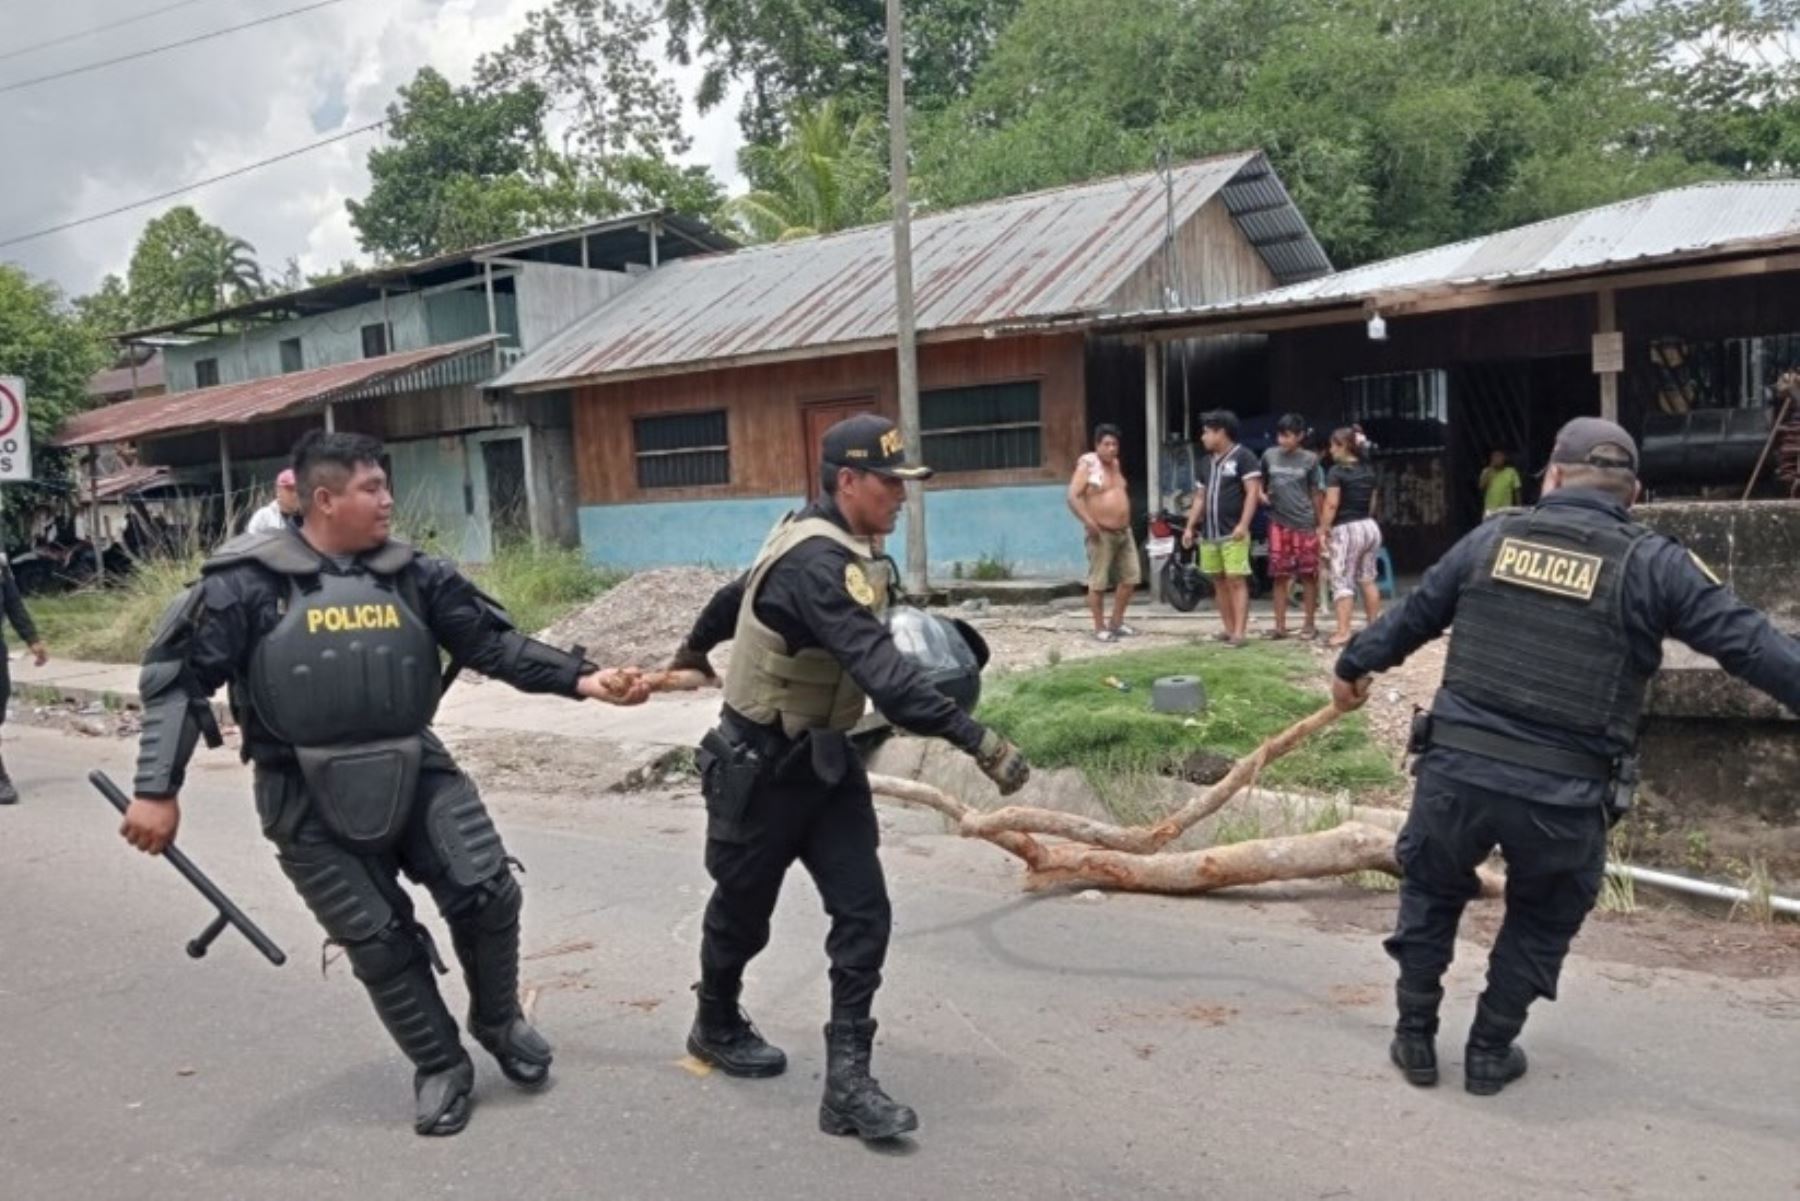 En Ucayali, efectivos de la Policía del Perú lograron desbloquear la carretera Federico Basadre, que había sido obstruida en 6 puntos.Los kilómetros liberados son: 130, 138, 152, 161, 190 y 214.Foto Twitter @MininterPeru